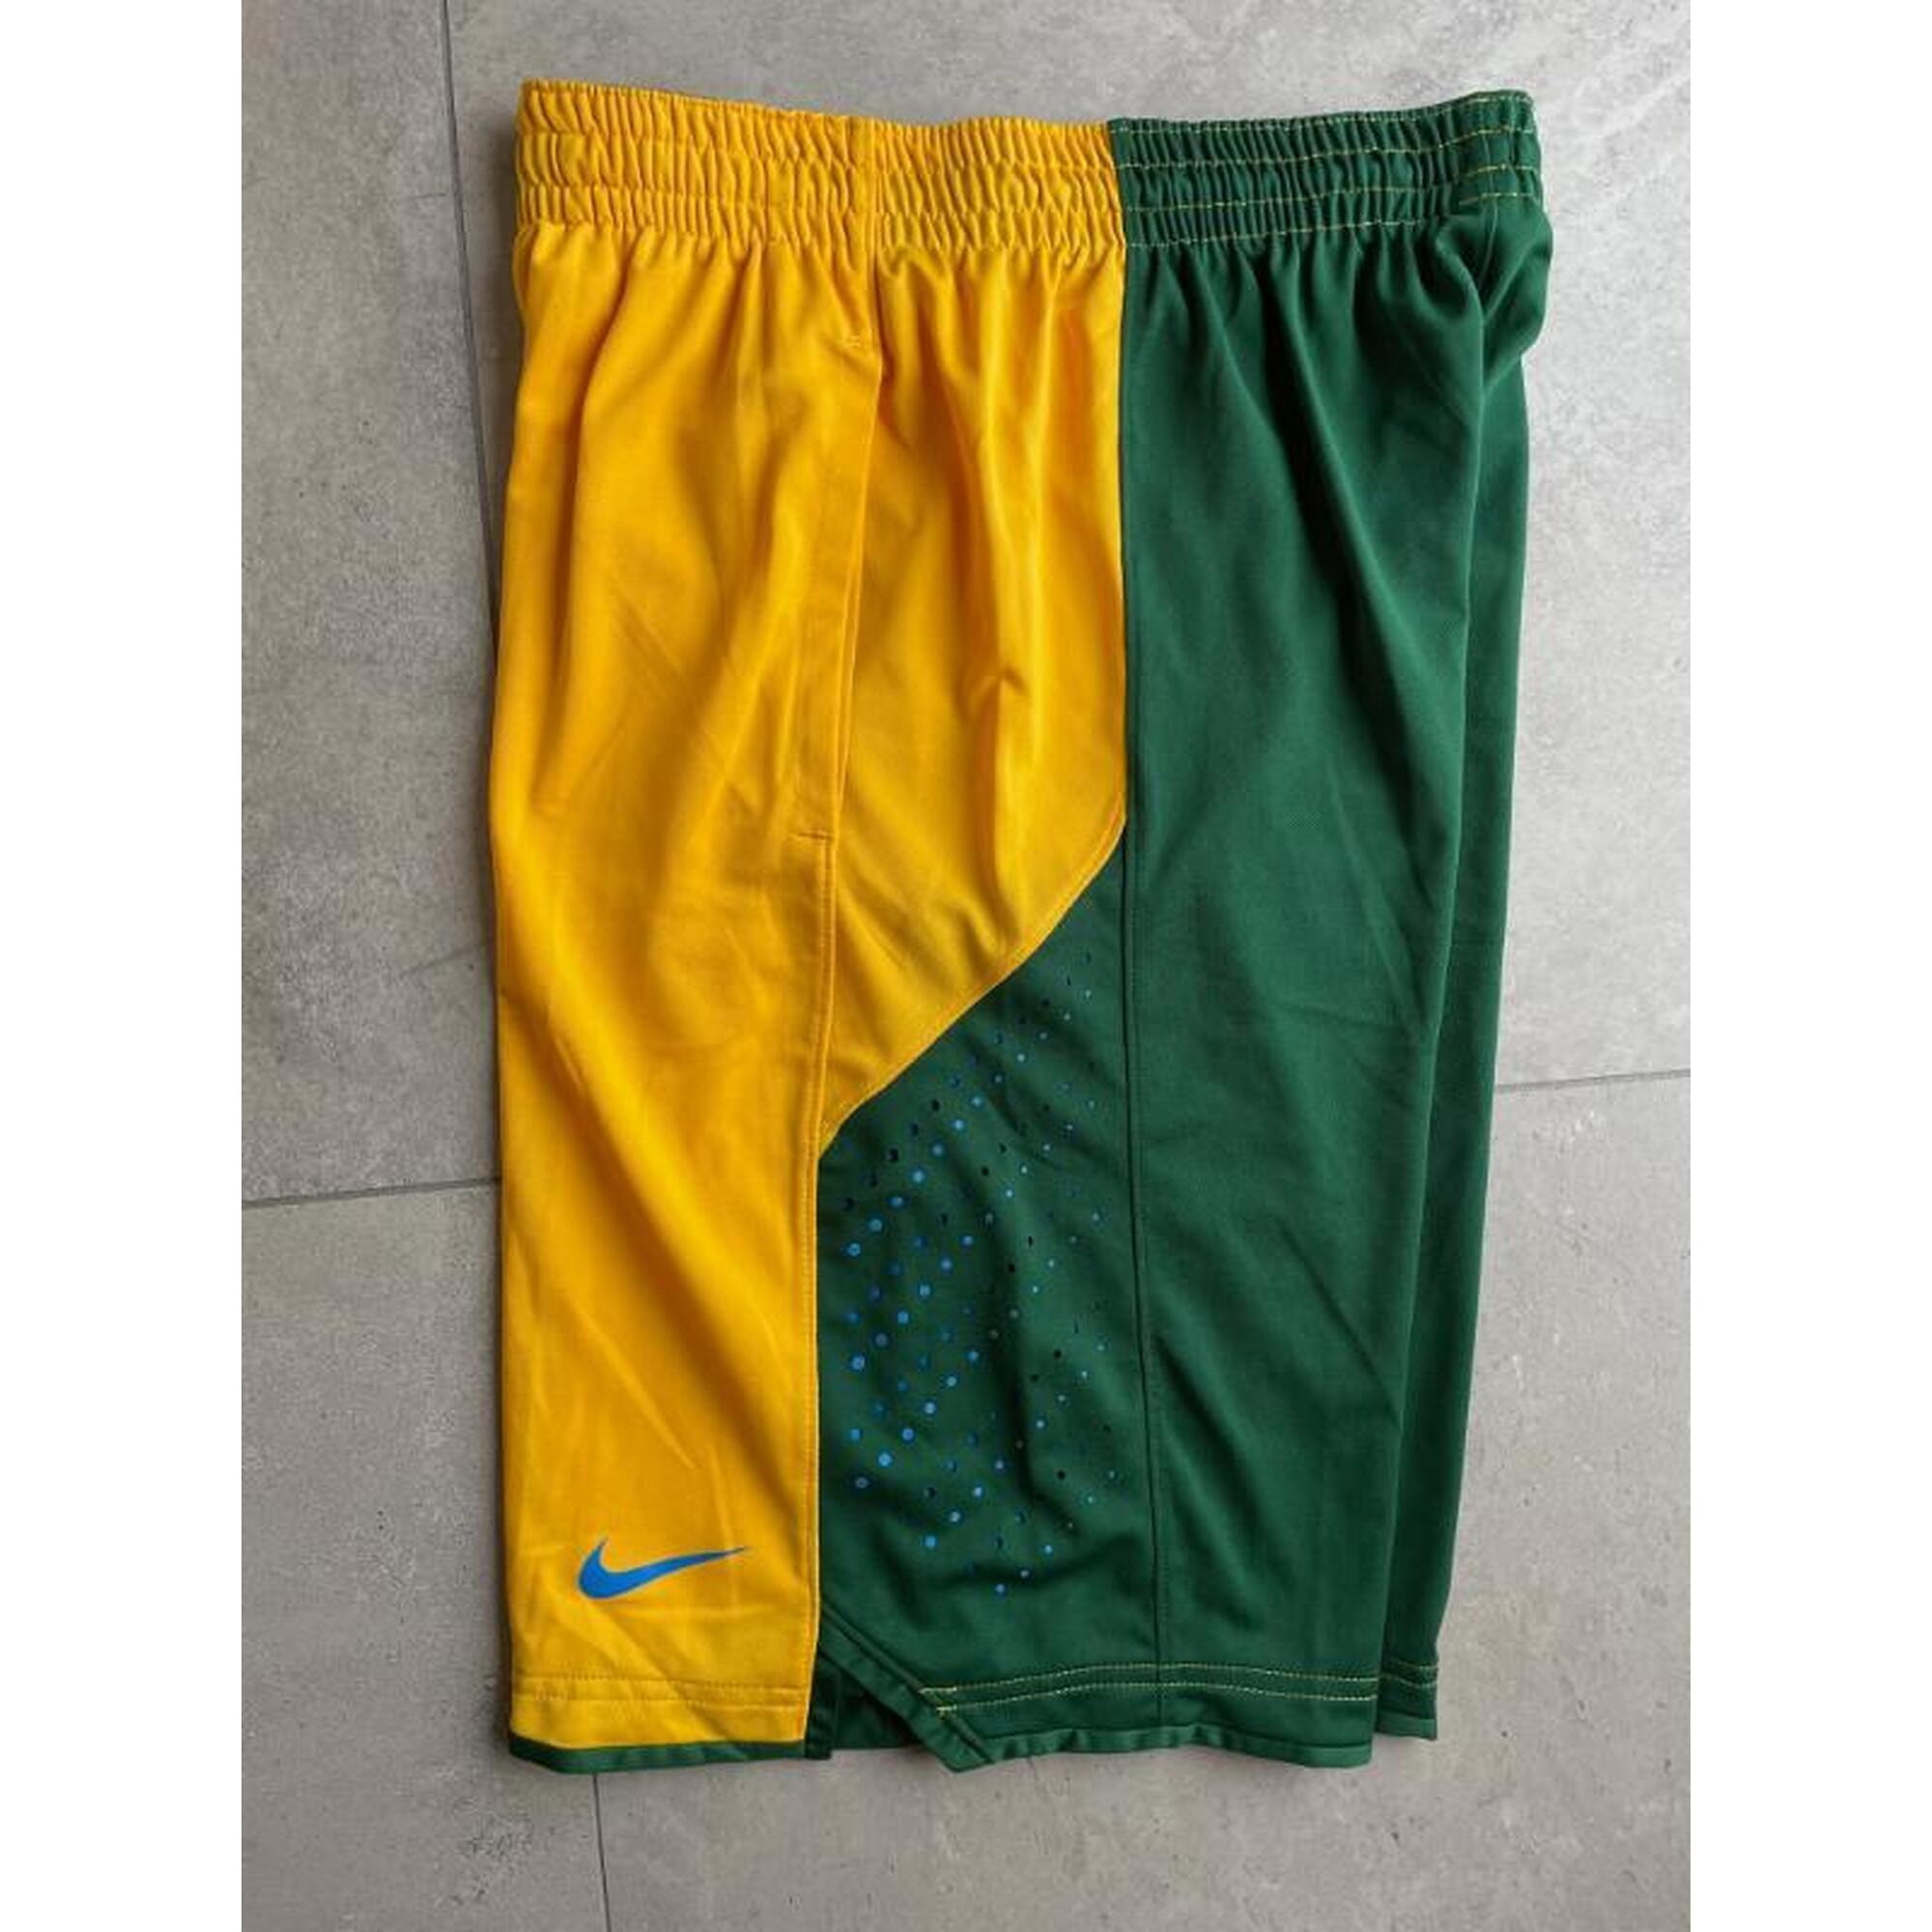 C2C - Basketbalshort Nike geel/groen